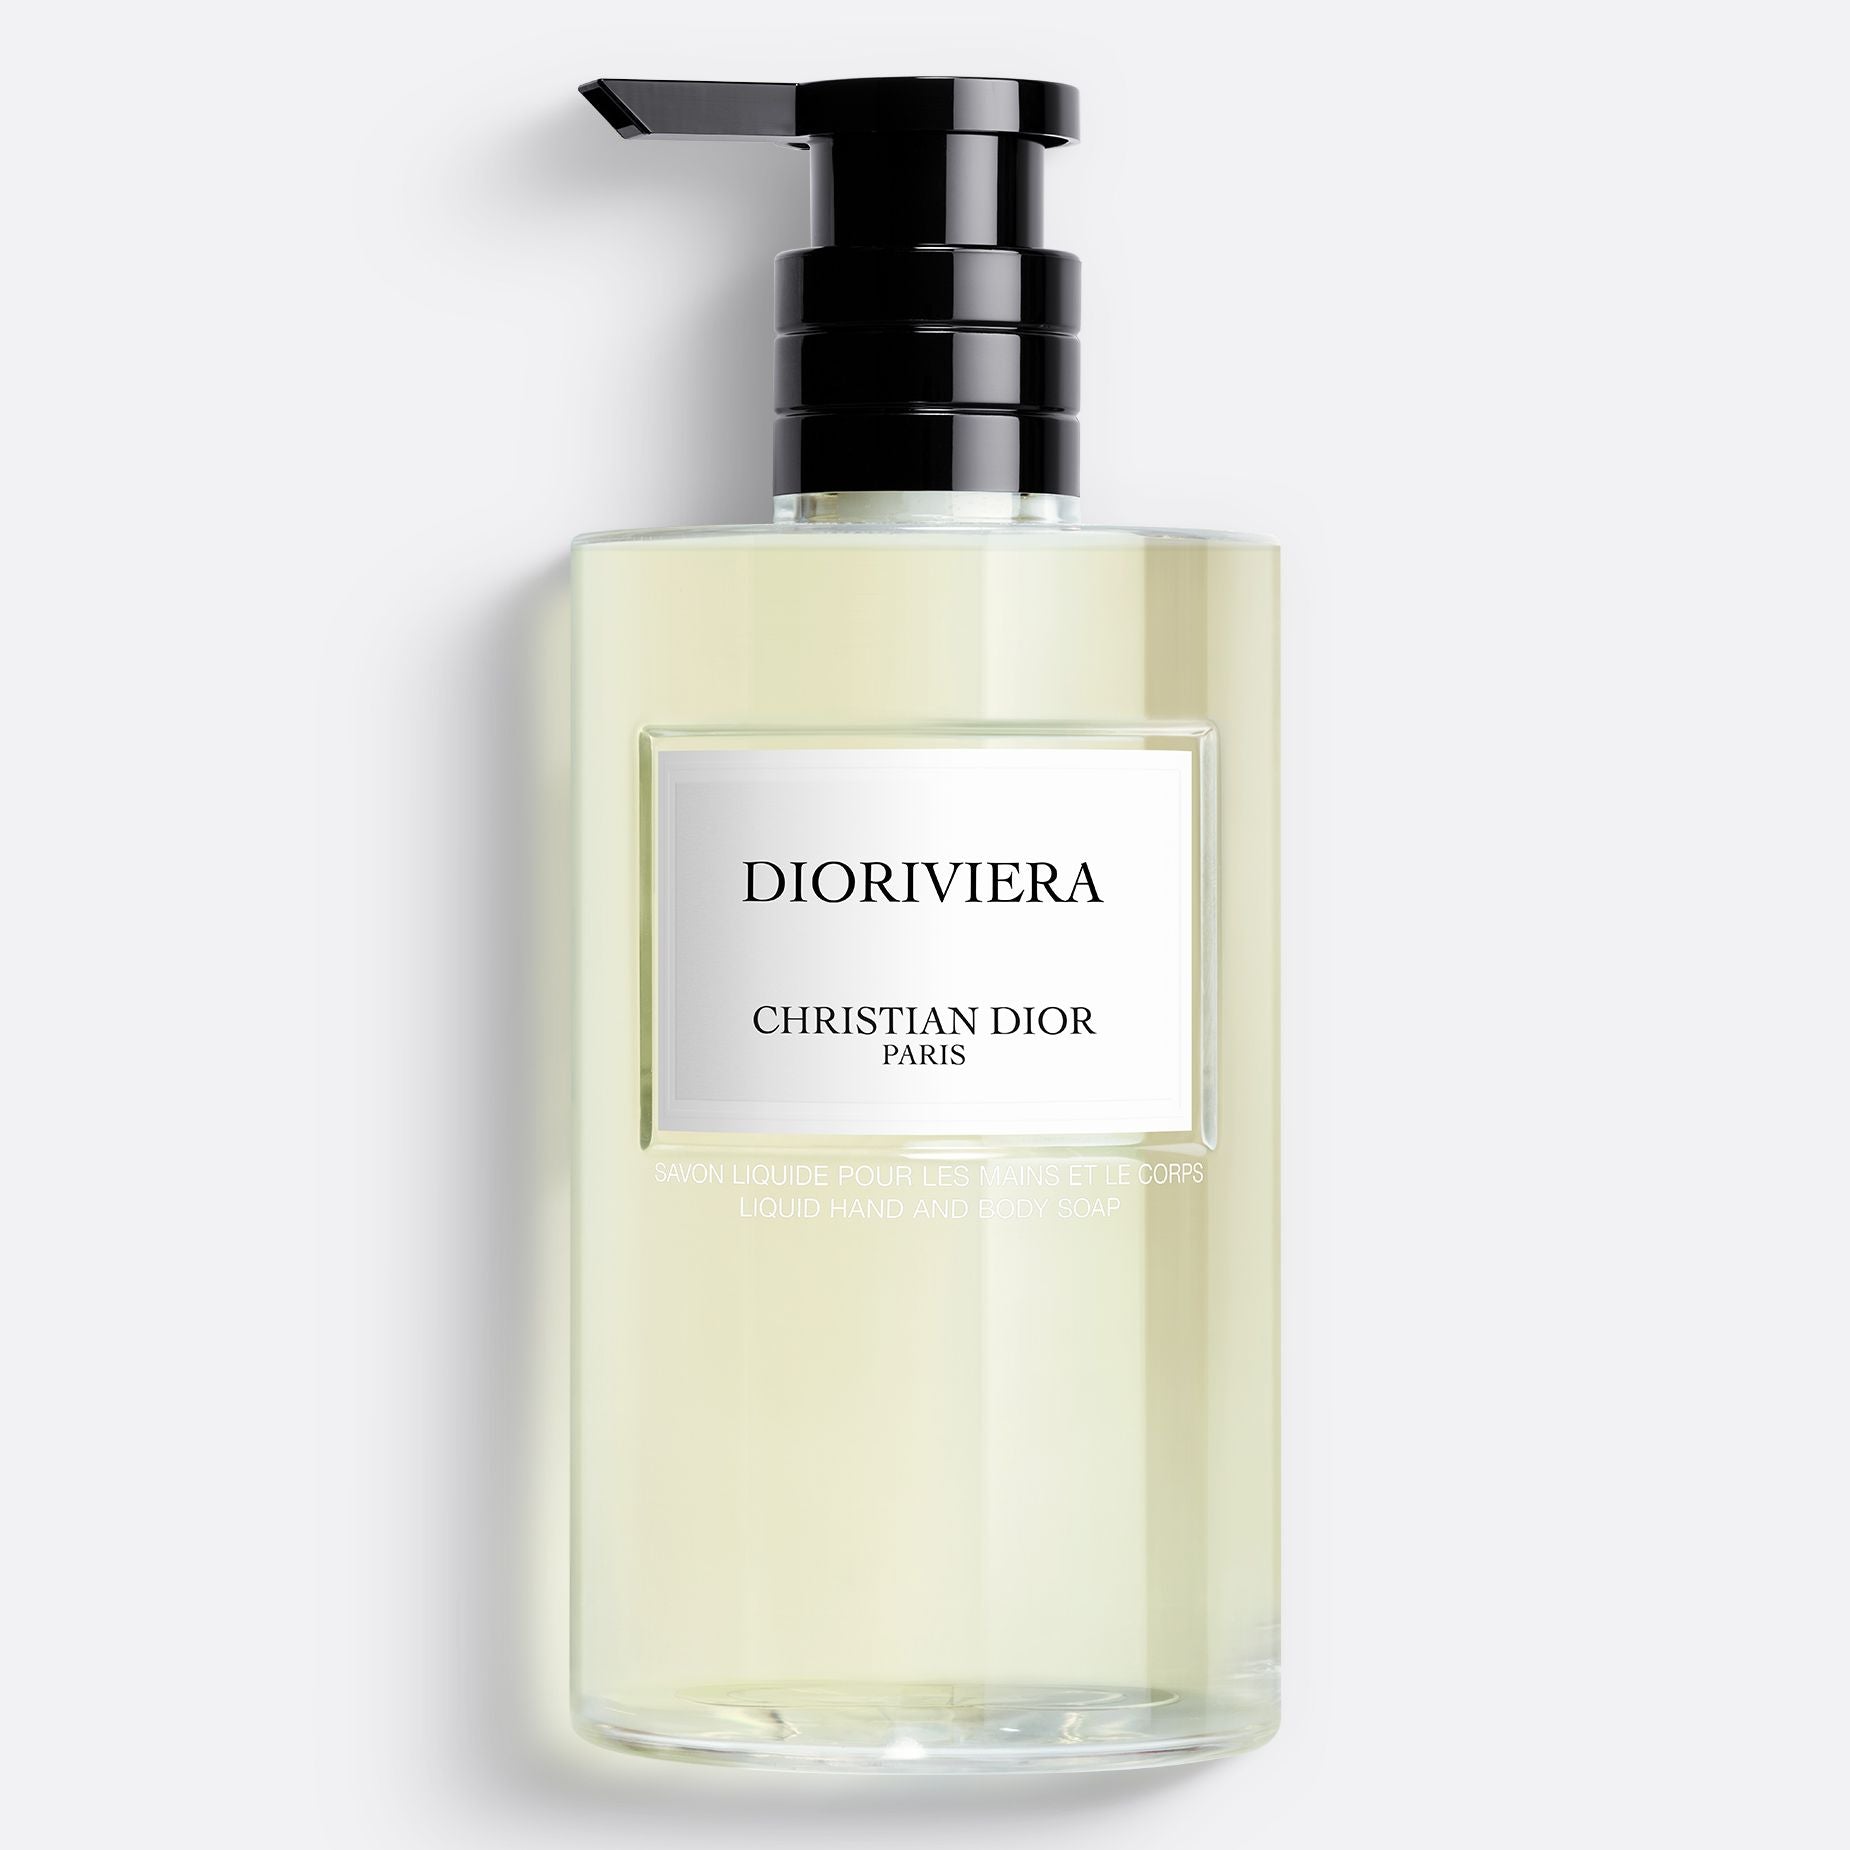 DIORIVIERA LIQUID SOAP ~ Liquid Hand and Body Soap